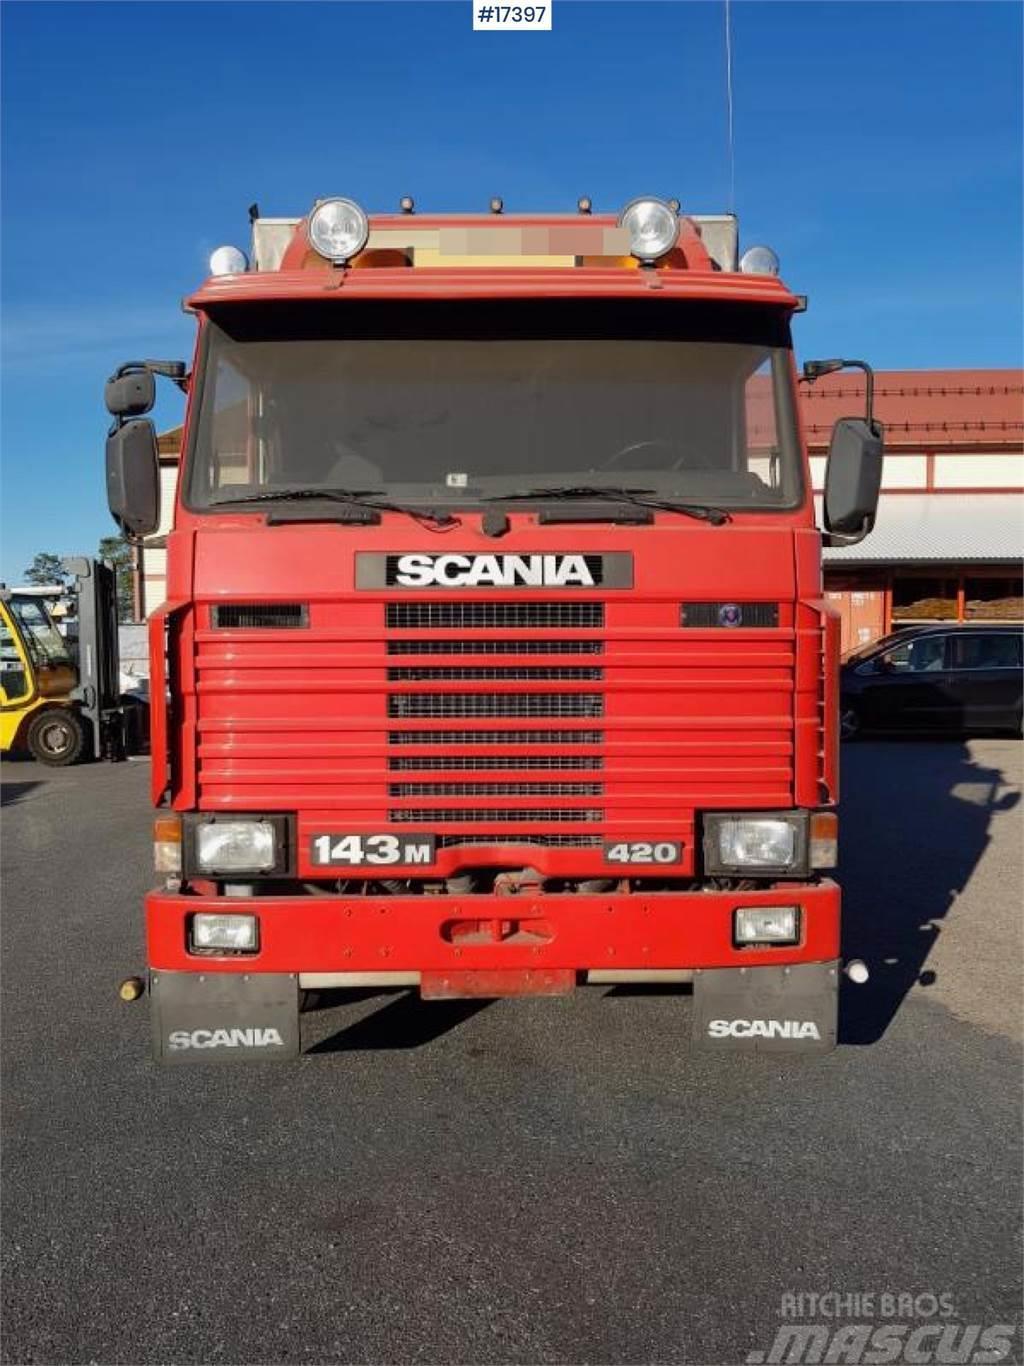 Scania 143M w/ rear mounted Hiab 105-3 crane from 1996 Kranbil